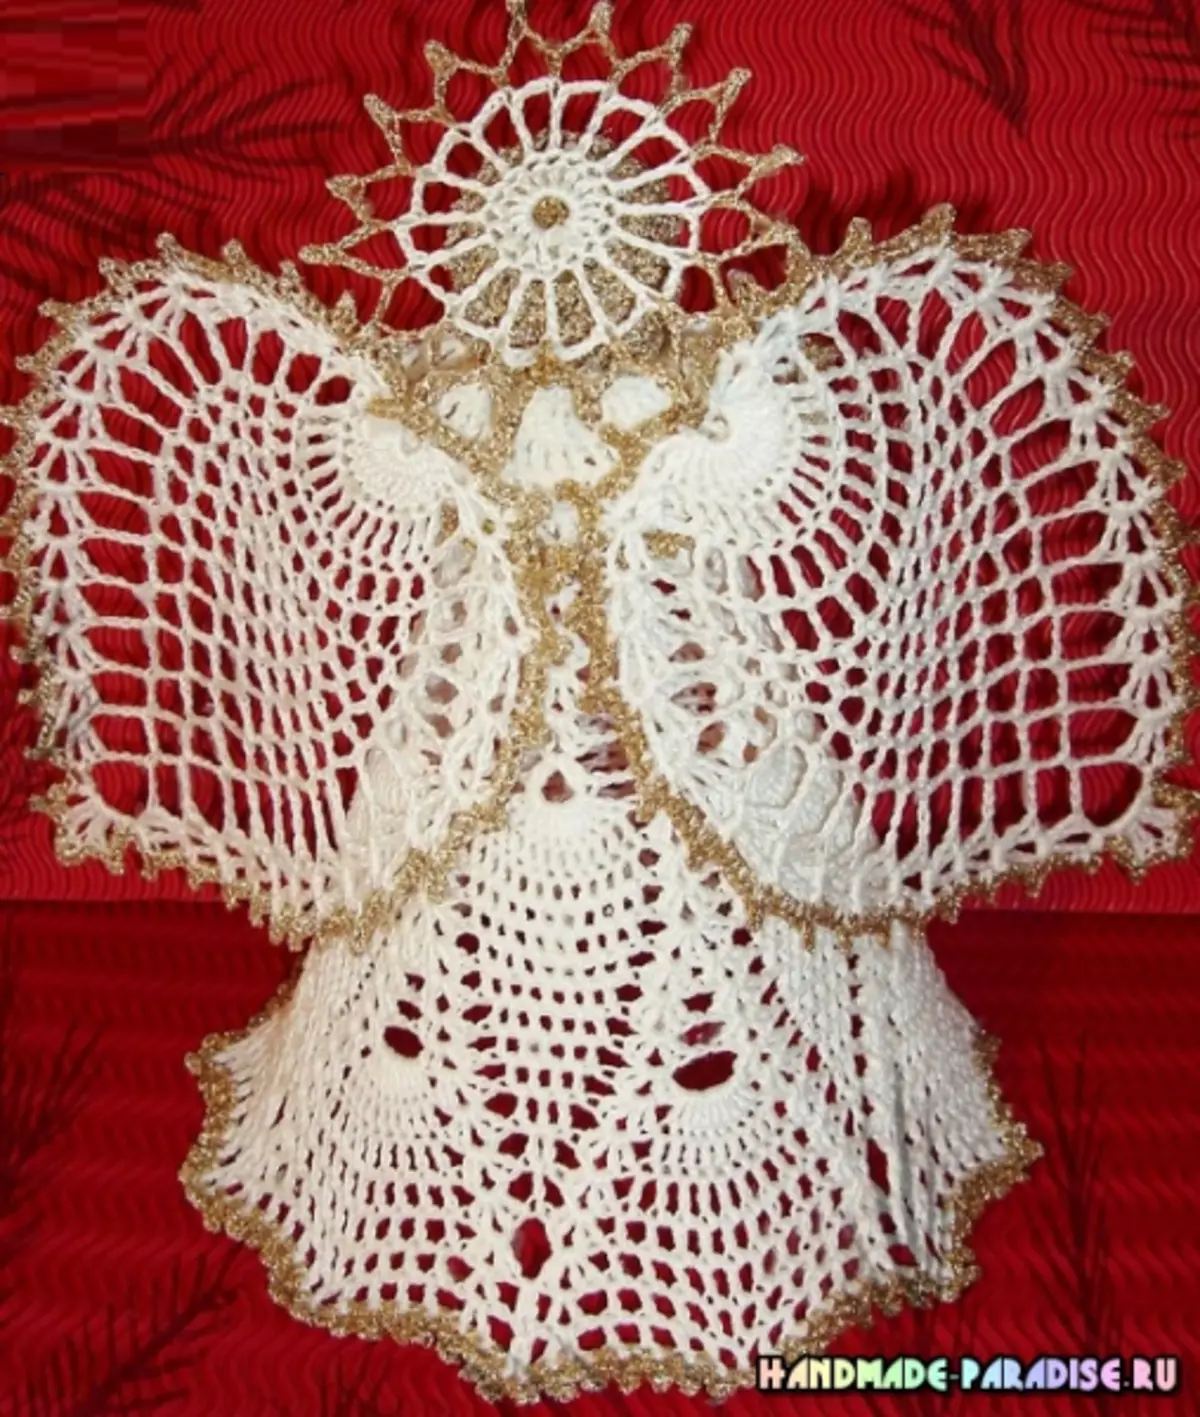 Paano itali ang isang openwork anghel crochet.